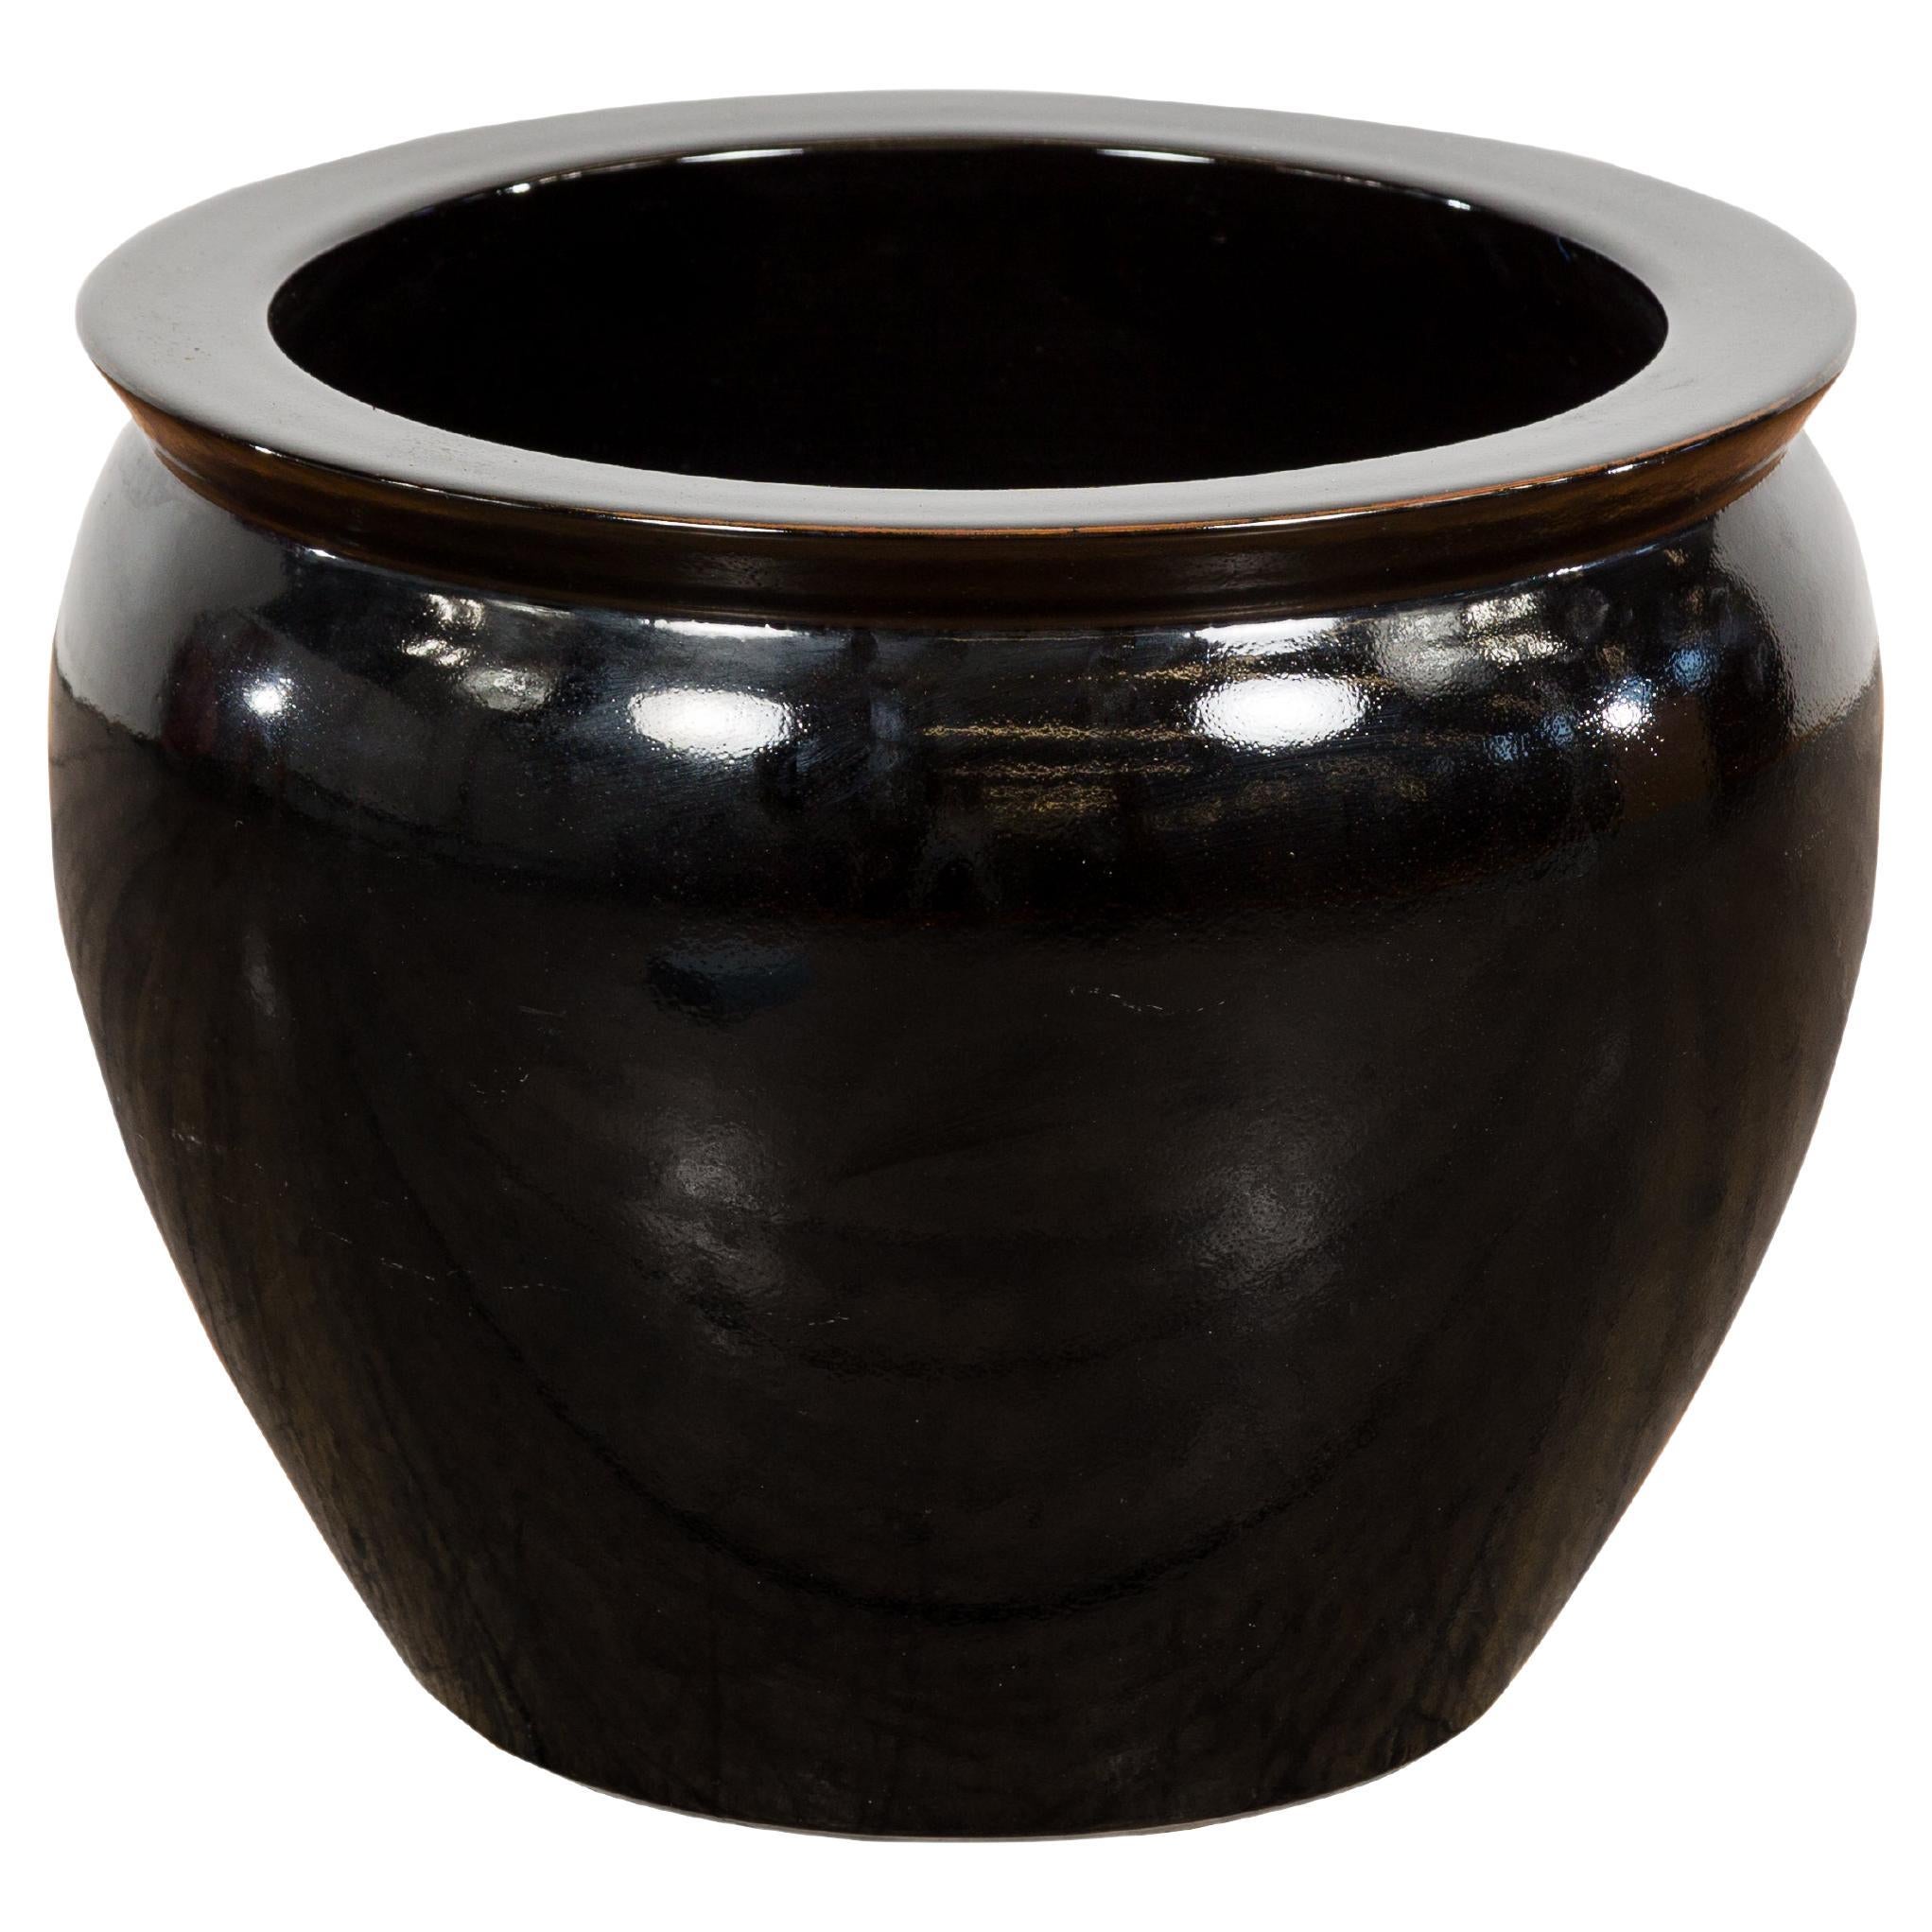 Rundes Pflanzgefäß aus Keramik mit schwarzer Glasur und sich verjüngenden Linien, Vintage